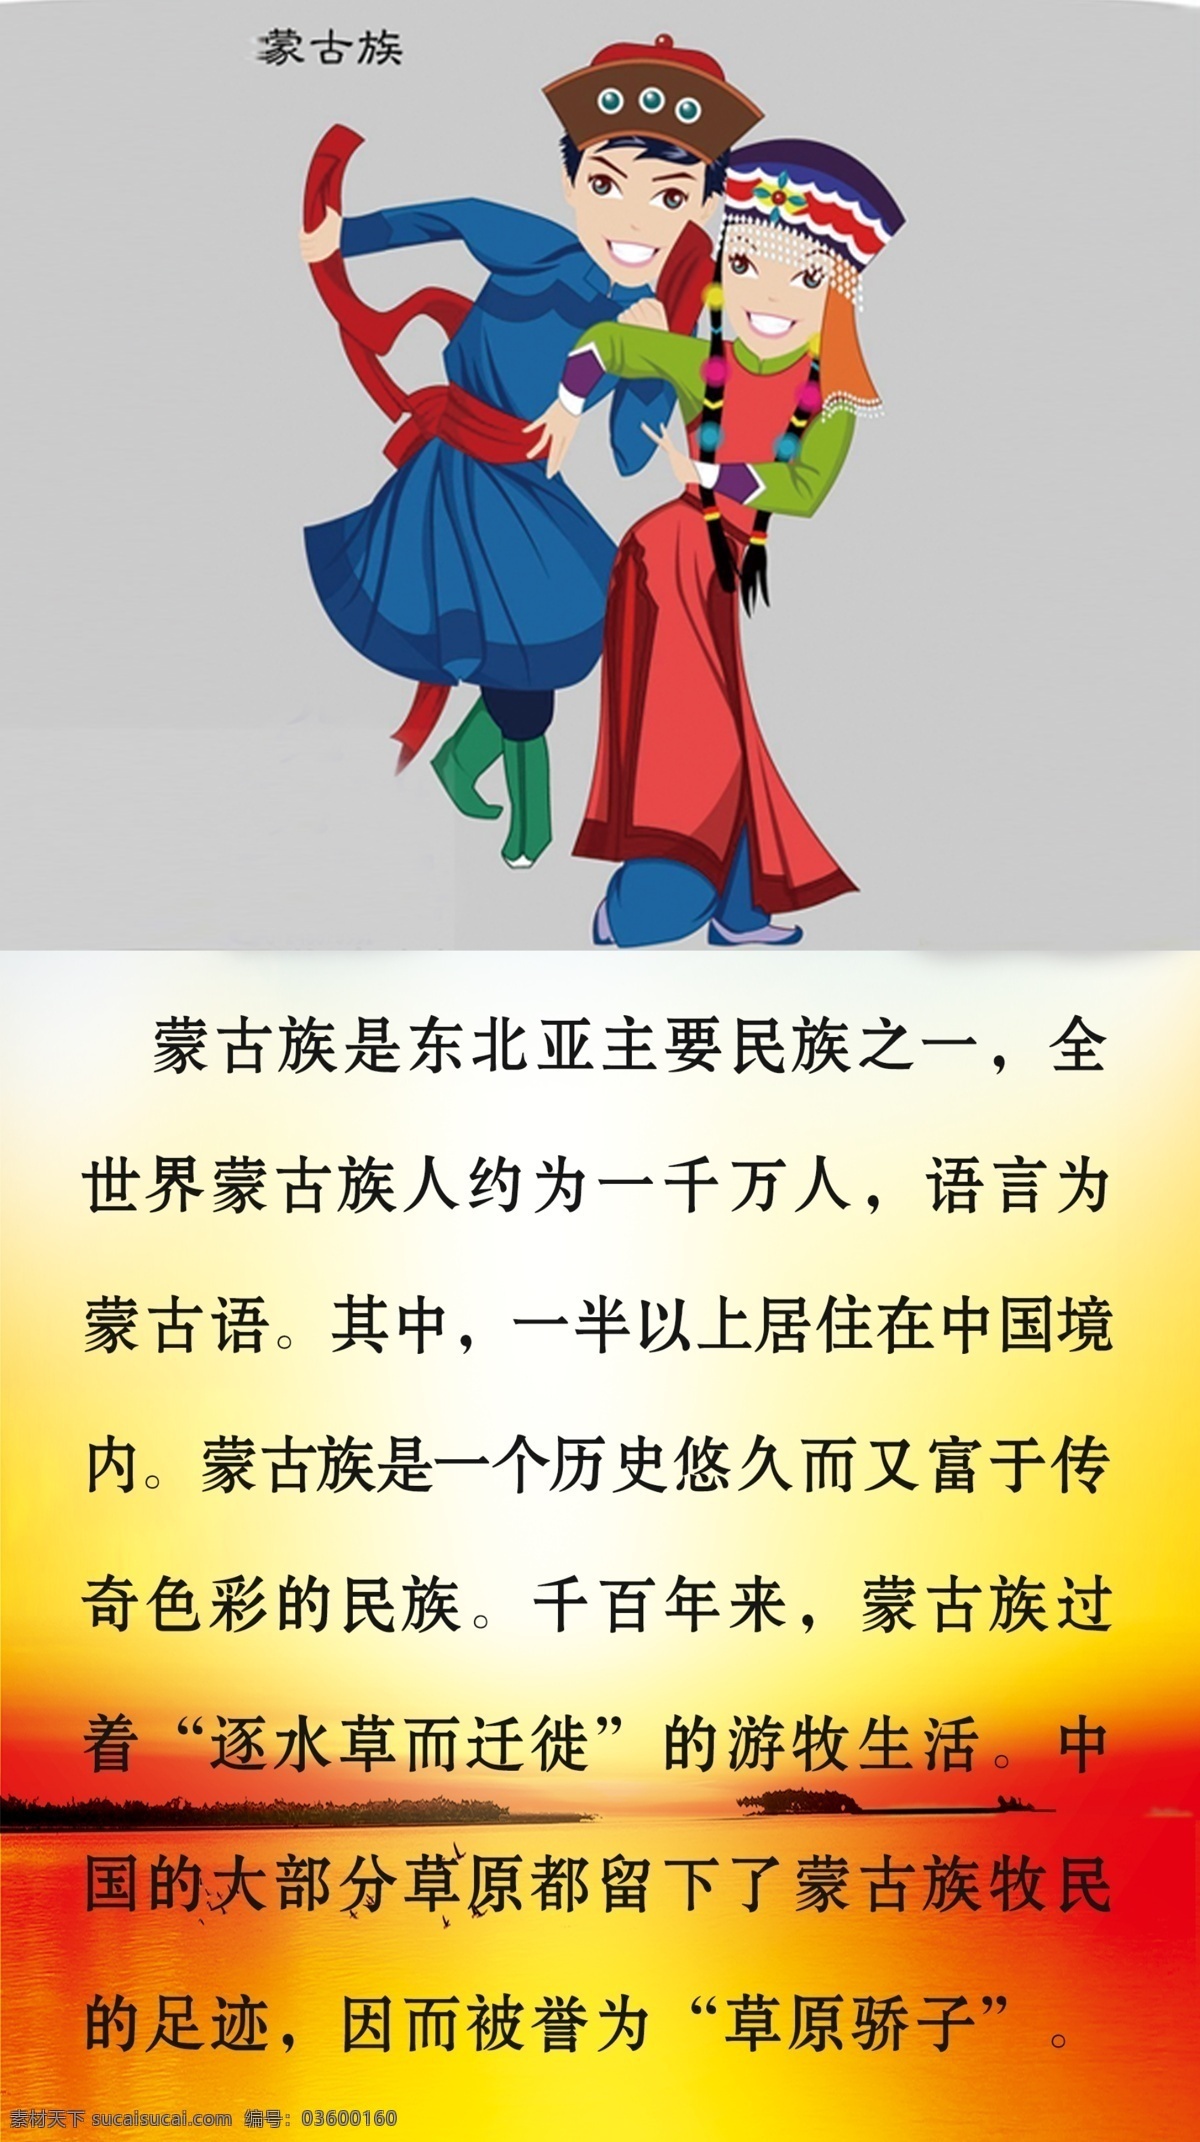 蒙古族 少数民族 文字 介绍 红黄 渐变背景 分层